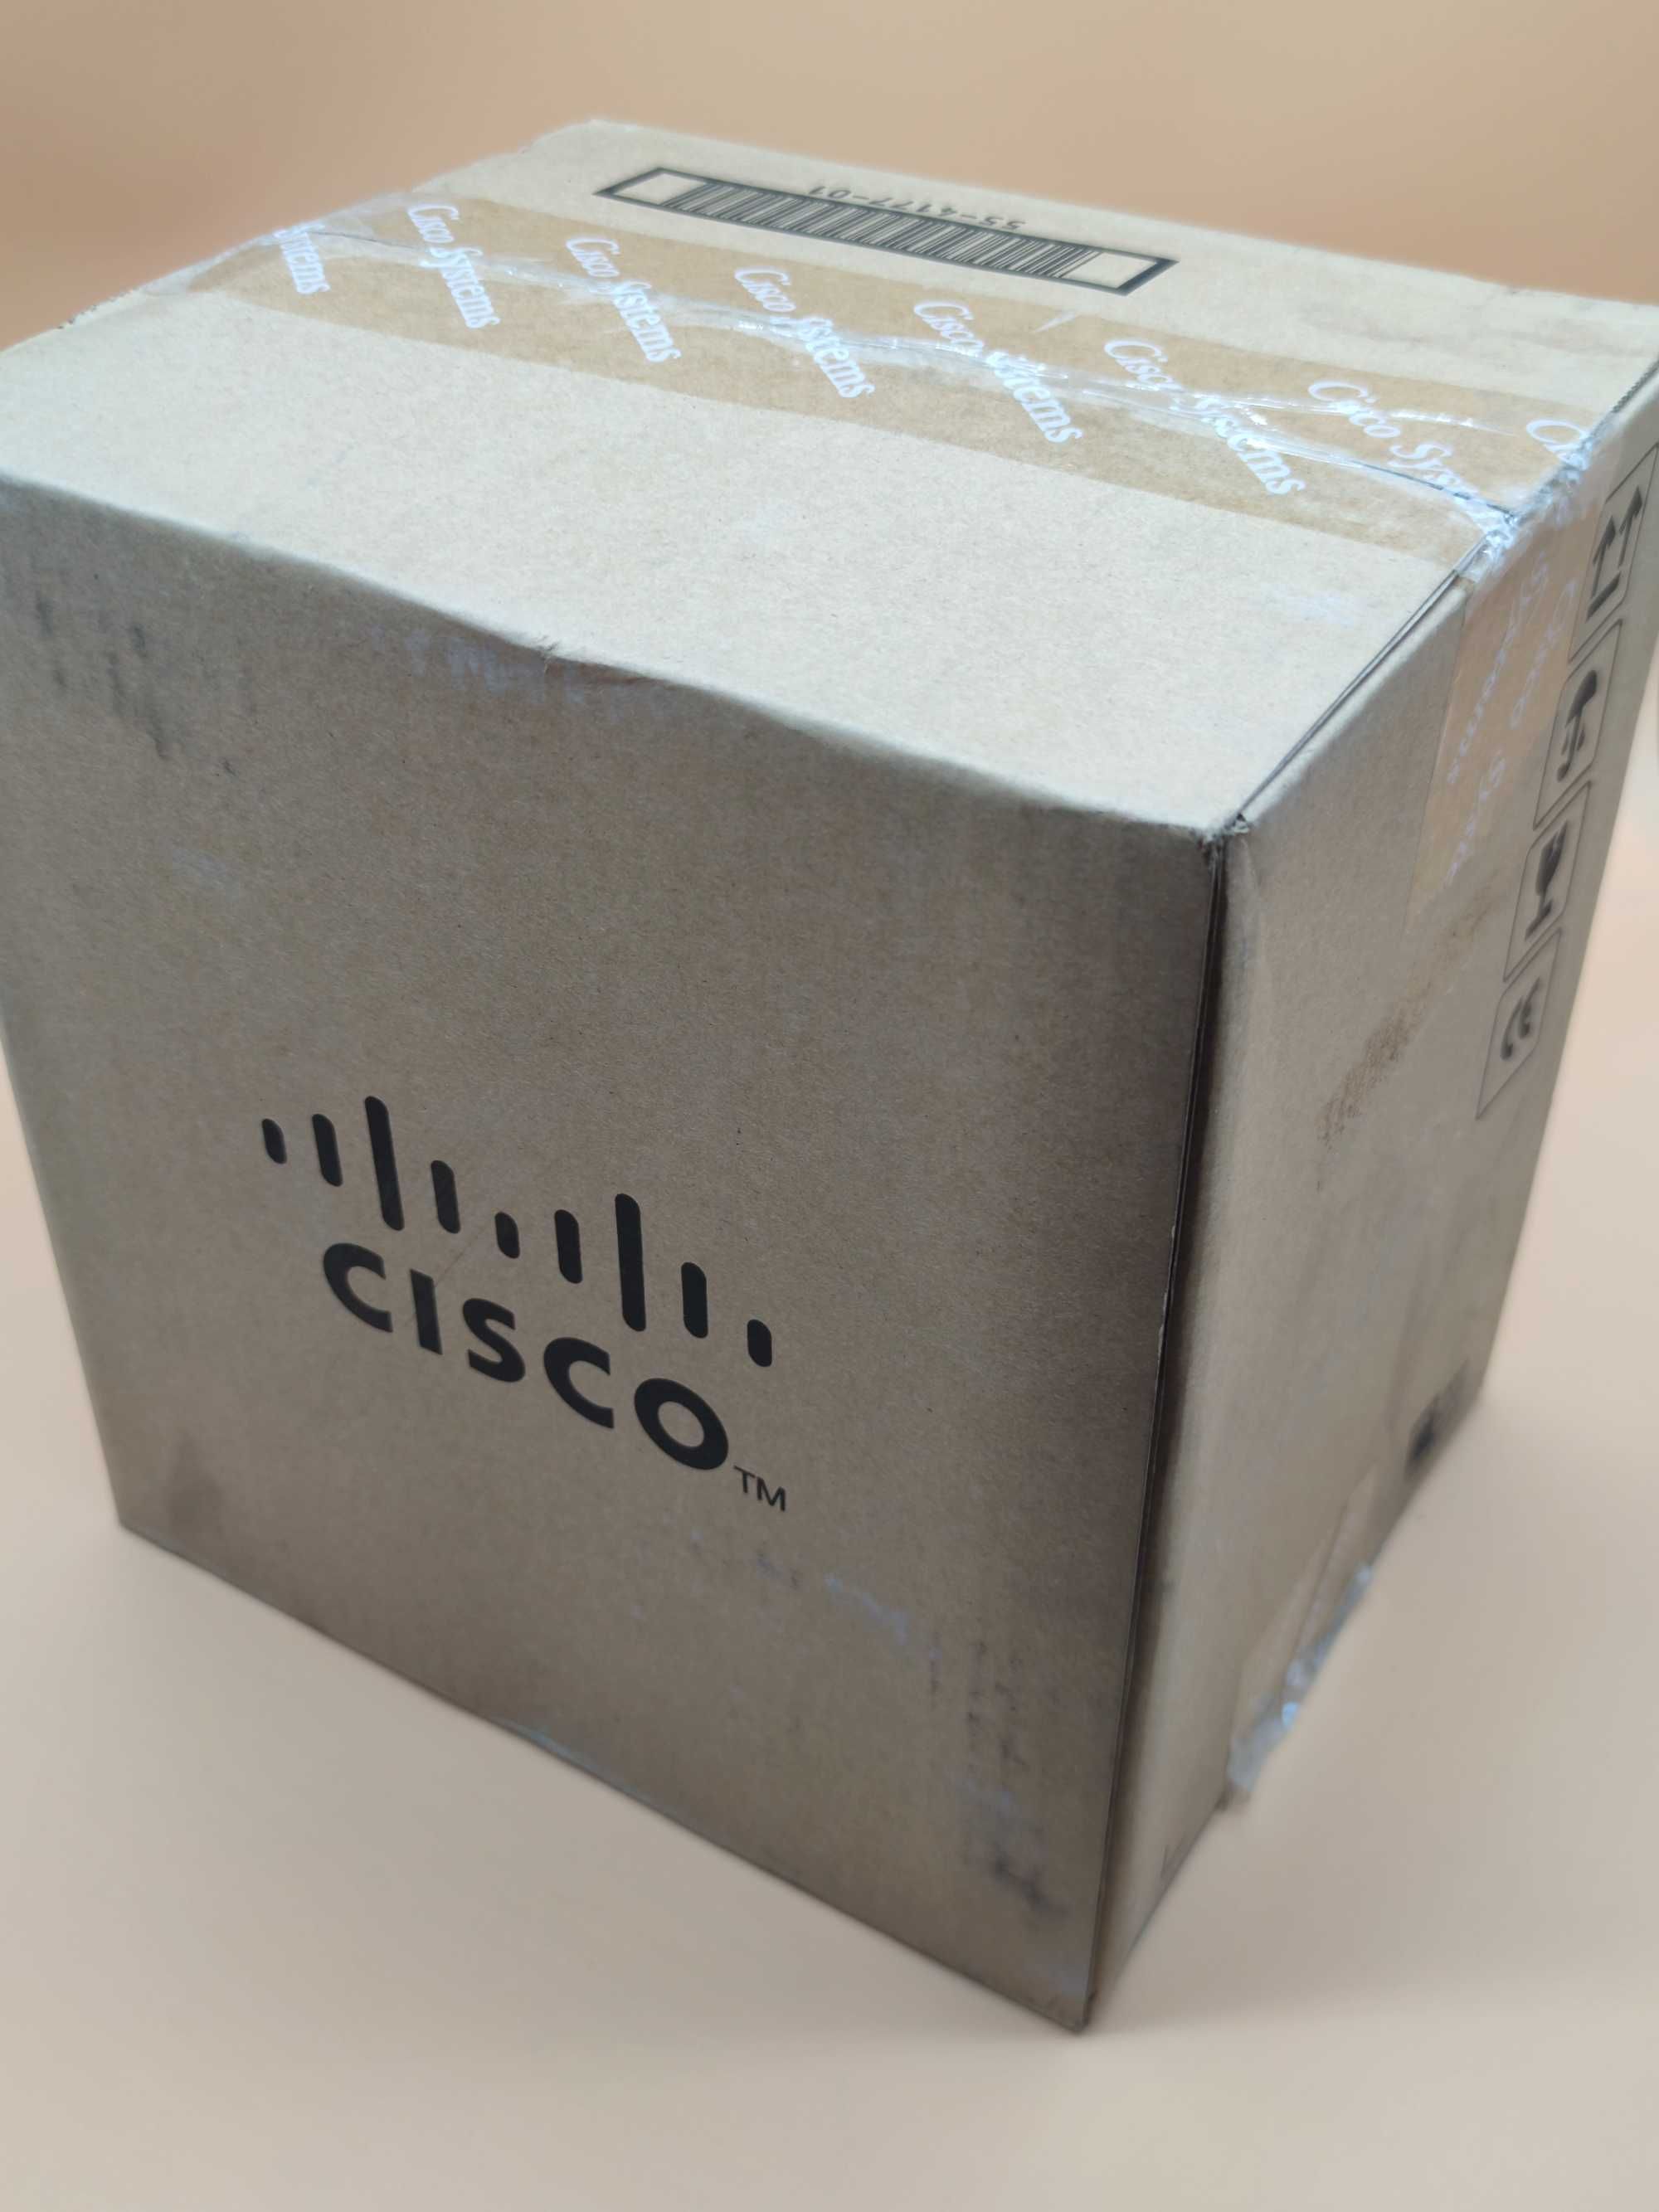 Качествени захранващи кабели на Cisco 2,5m, 3x1.00 кв мм